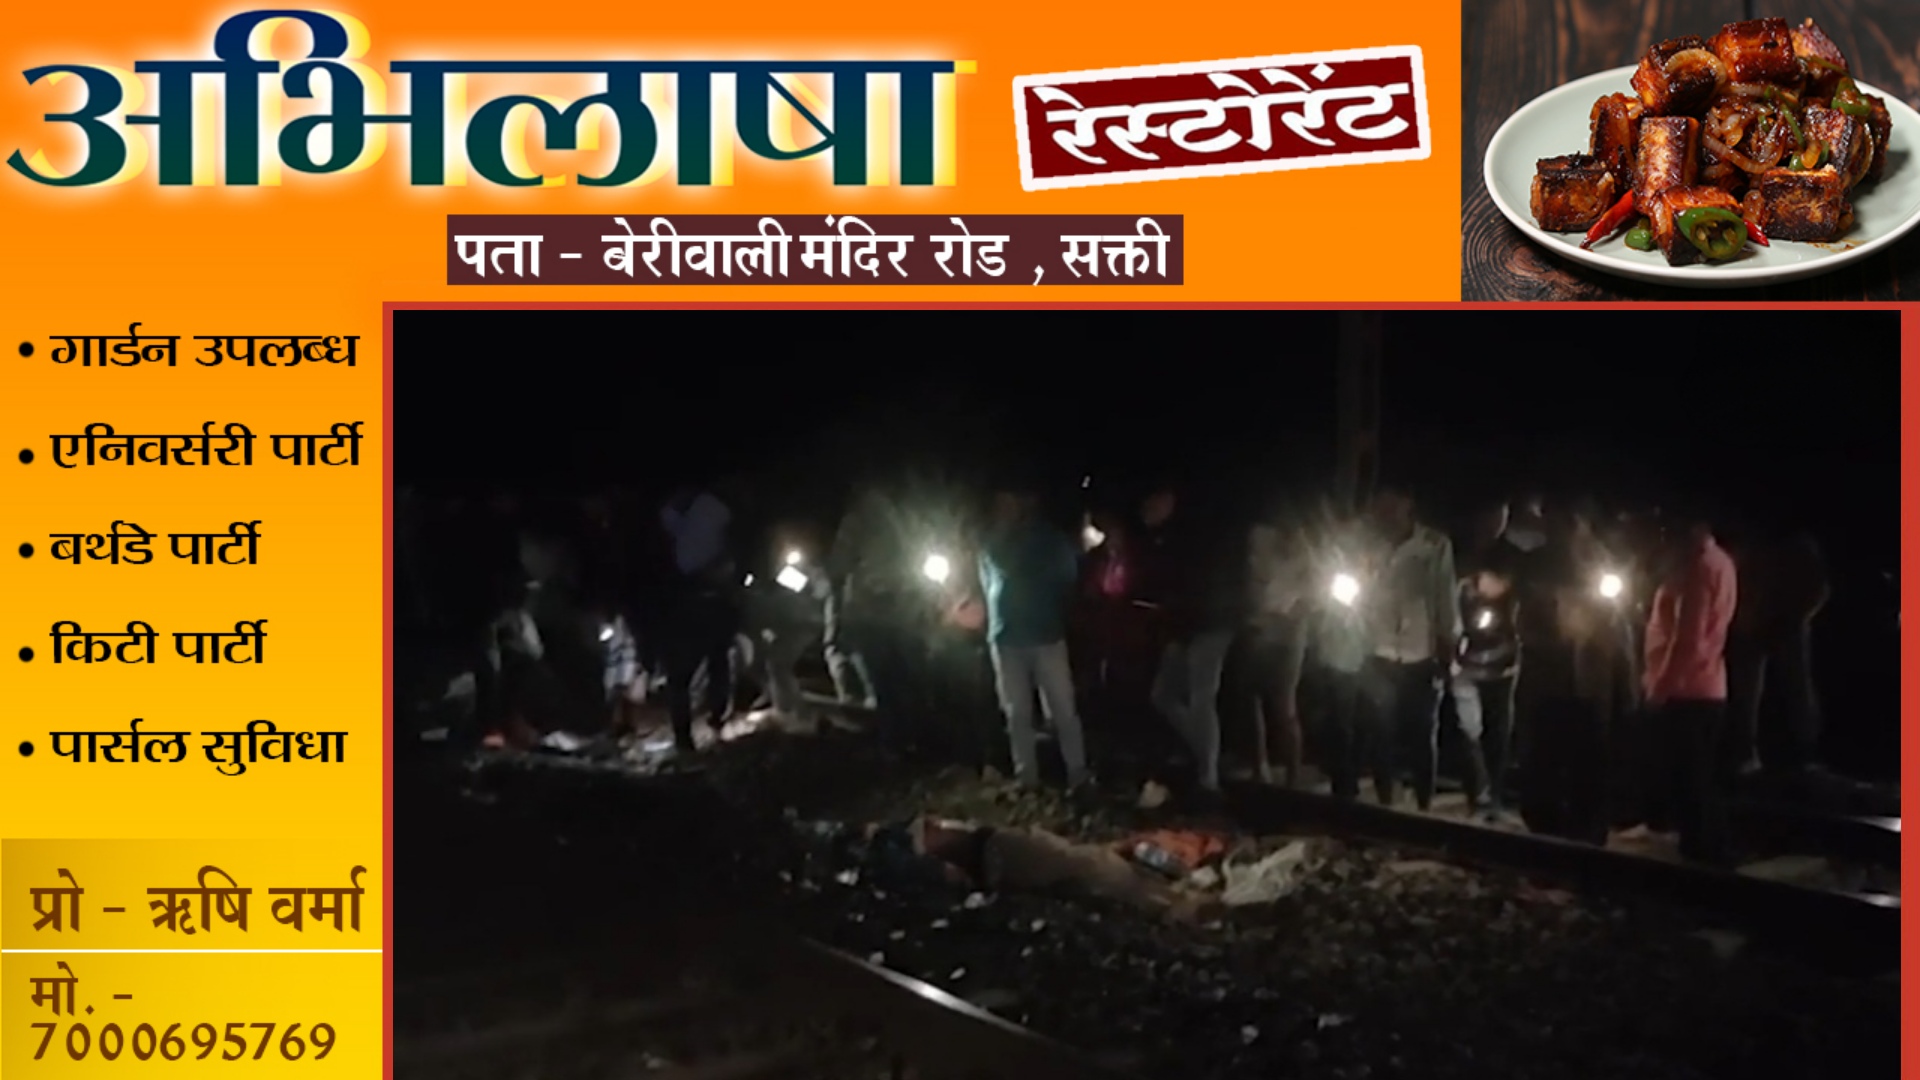 बड़ा रेल हादसा , यशवंतपुर एक्सप्रेस से कट कर 12 लोगो की मौत , बढ़ सकती है मृतकों की संख्या